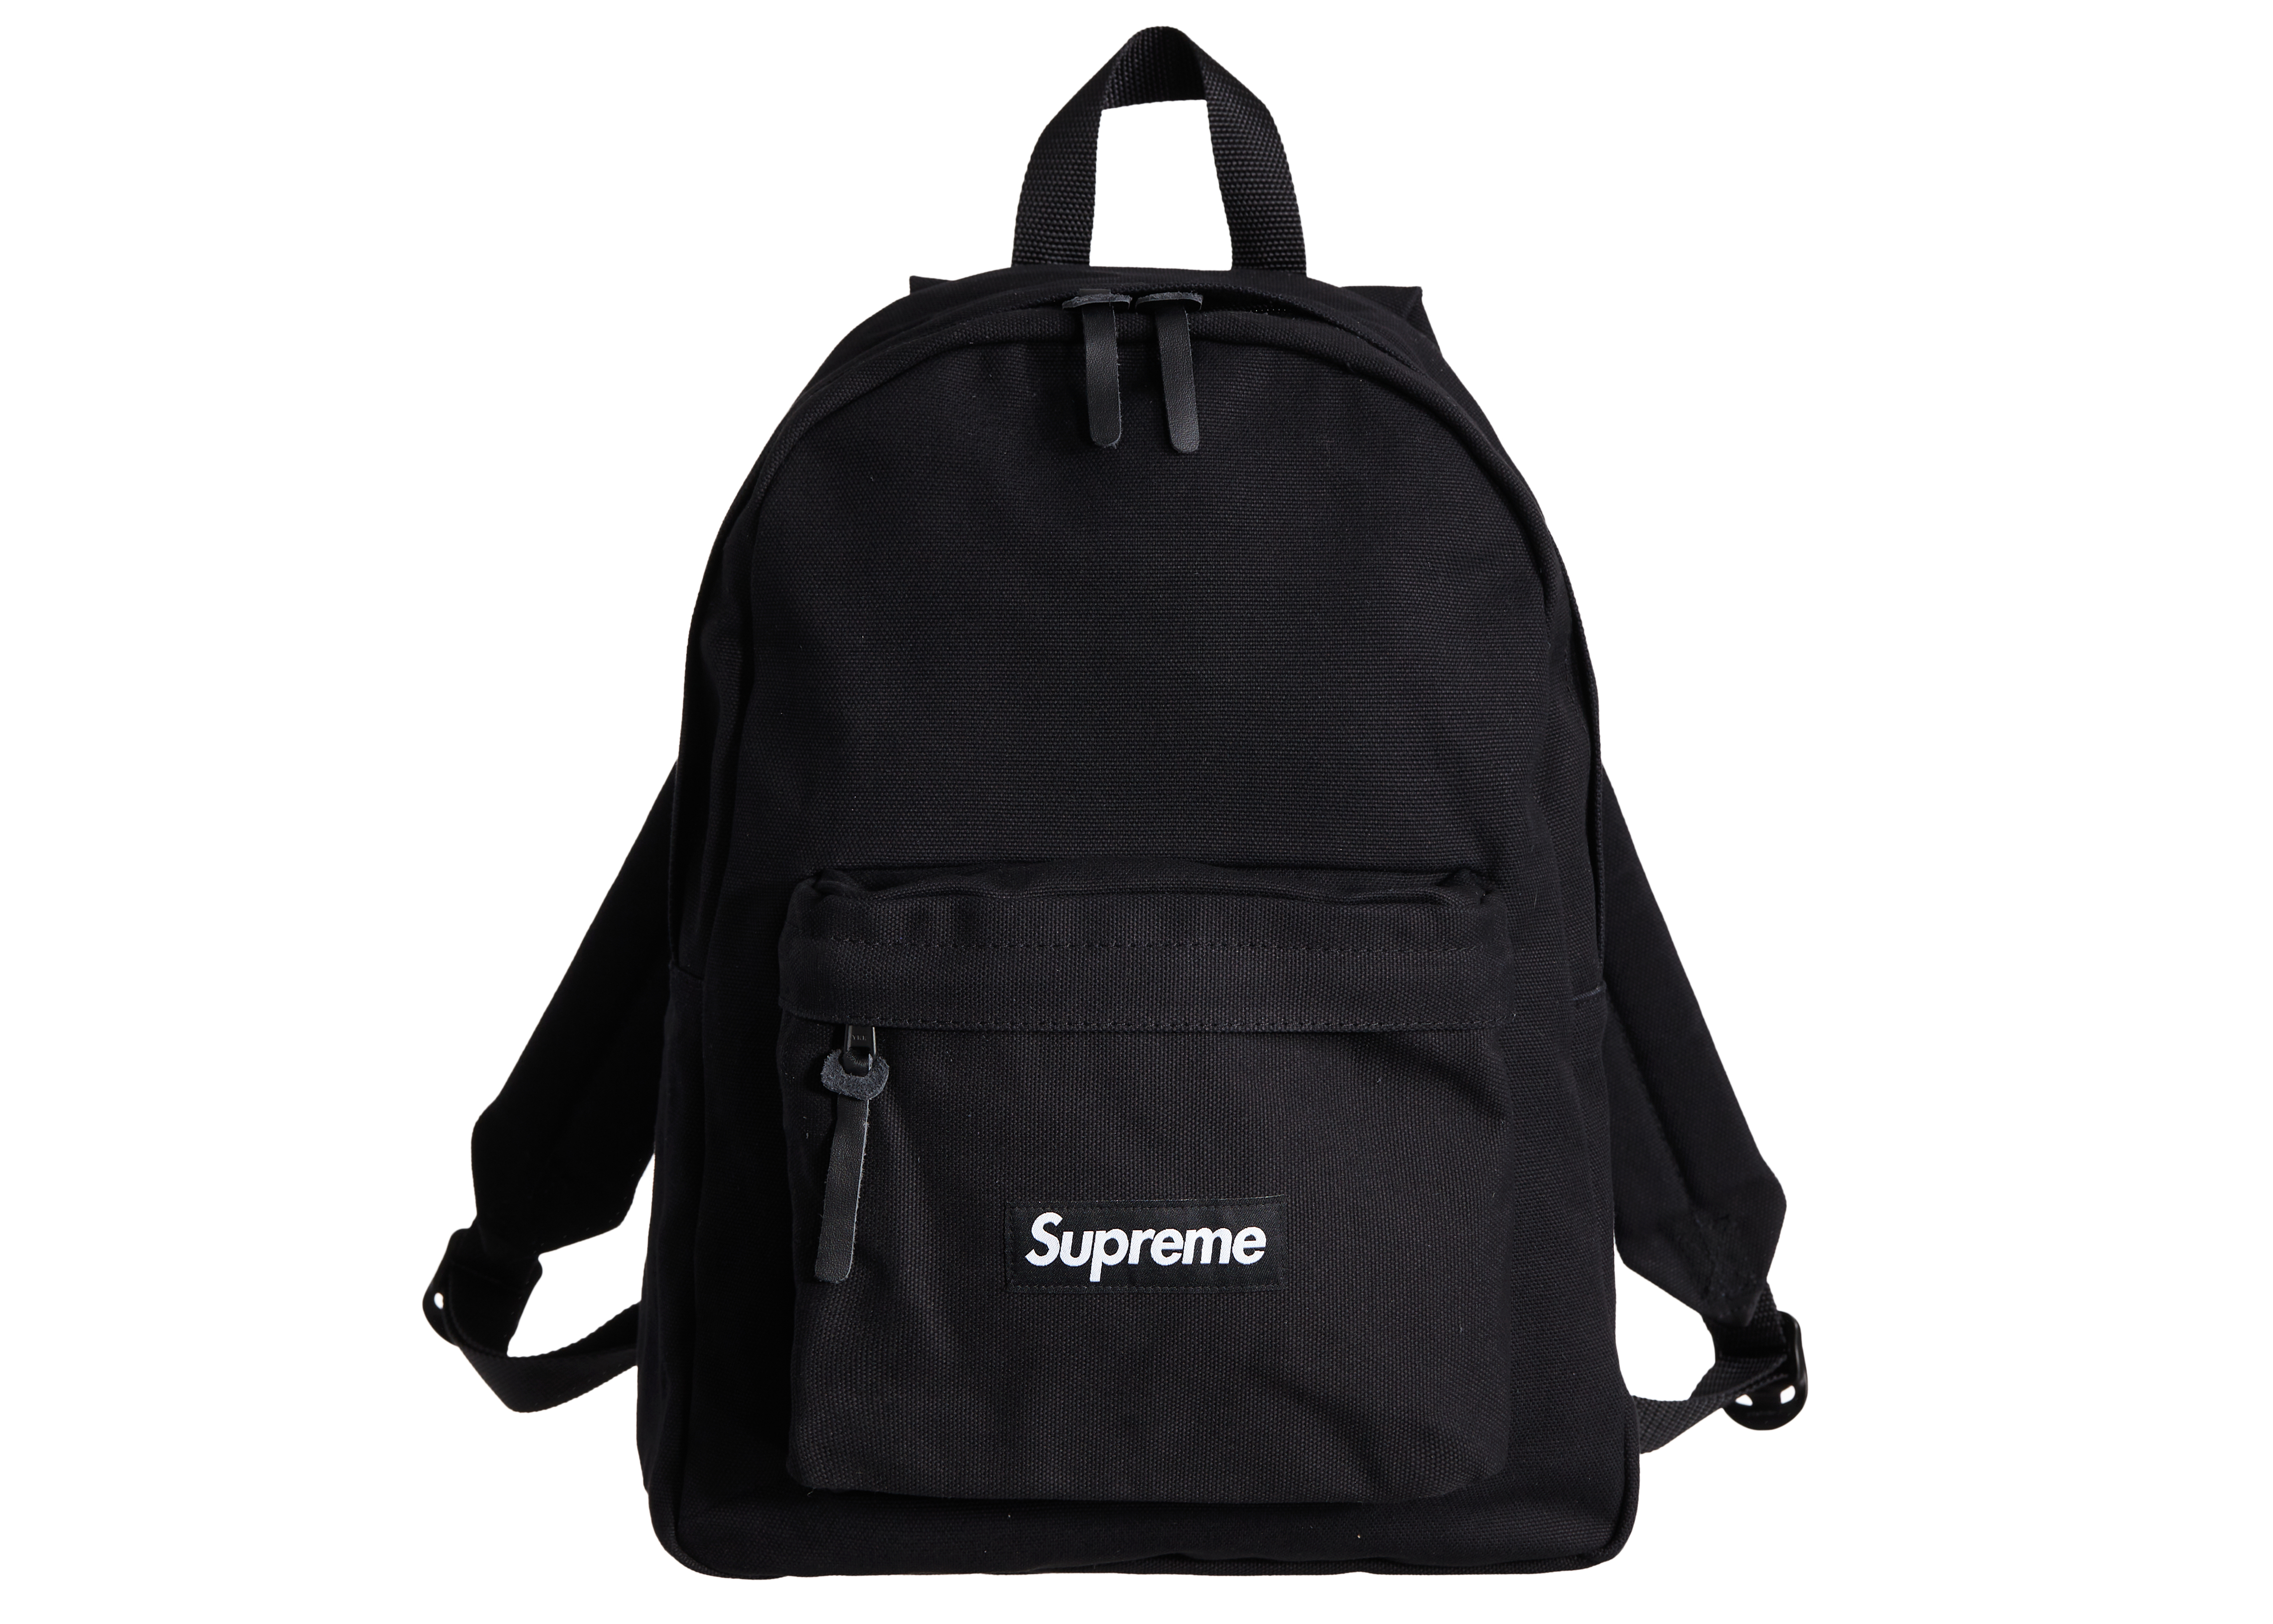 Supreme Canvas Backpack Black バックパックブラック